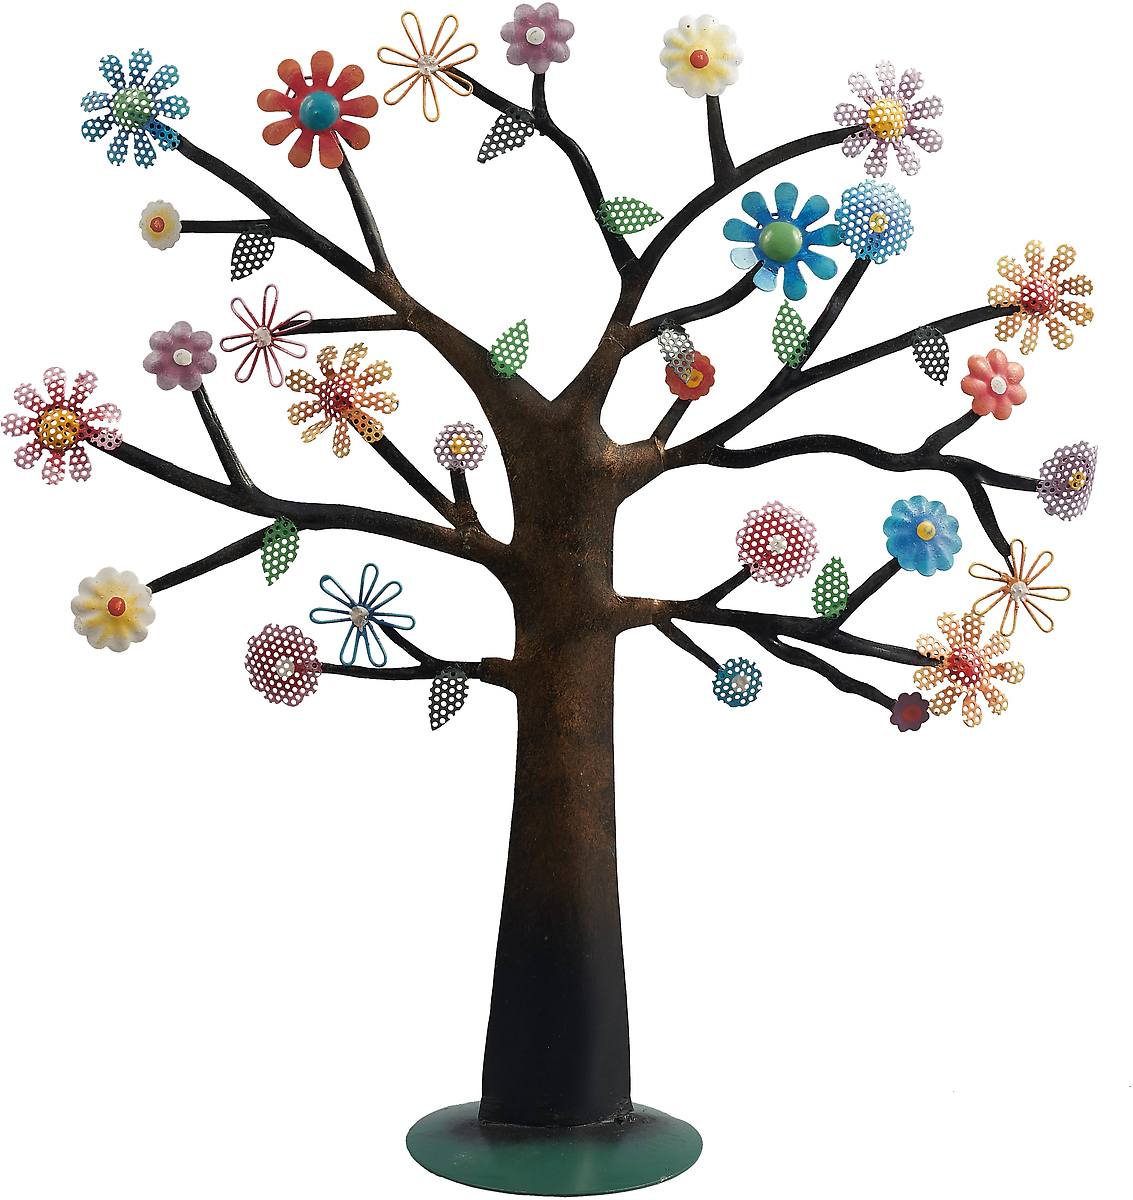 фото Подставка для украшений You'll Love Цветущее дерево, 73200, в ассортименте